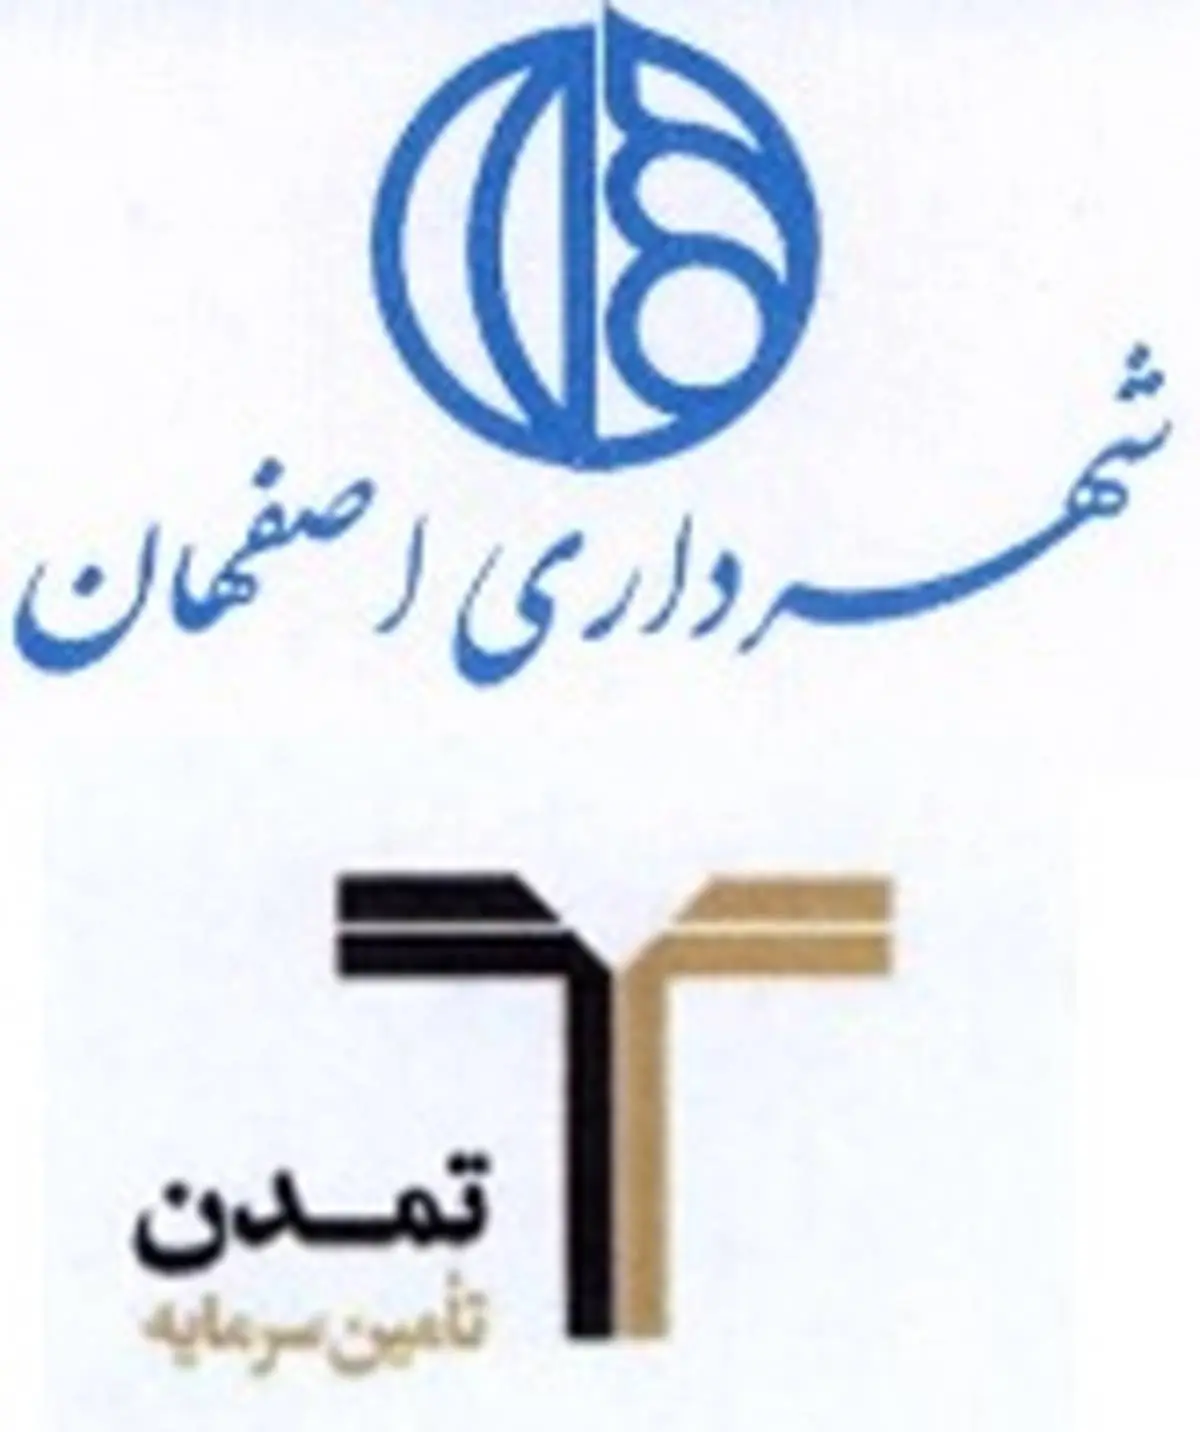  درج اوراق مشارکت شهرداری اصفهان با نماد "مصفها112 " در بورس تهران 